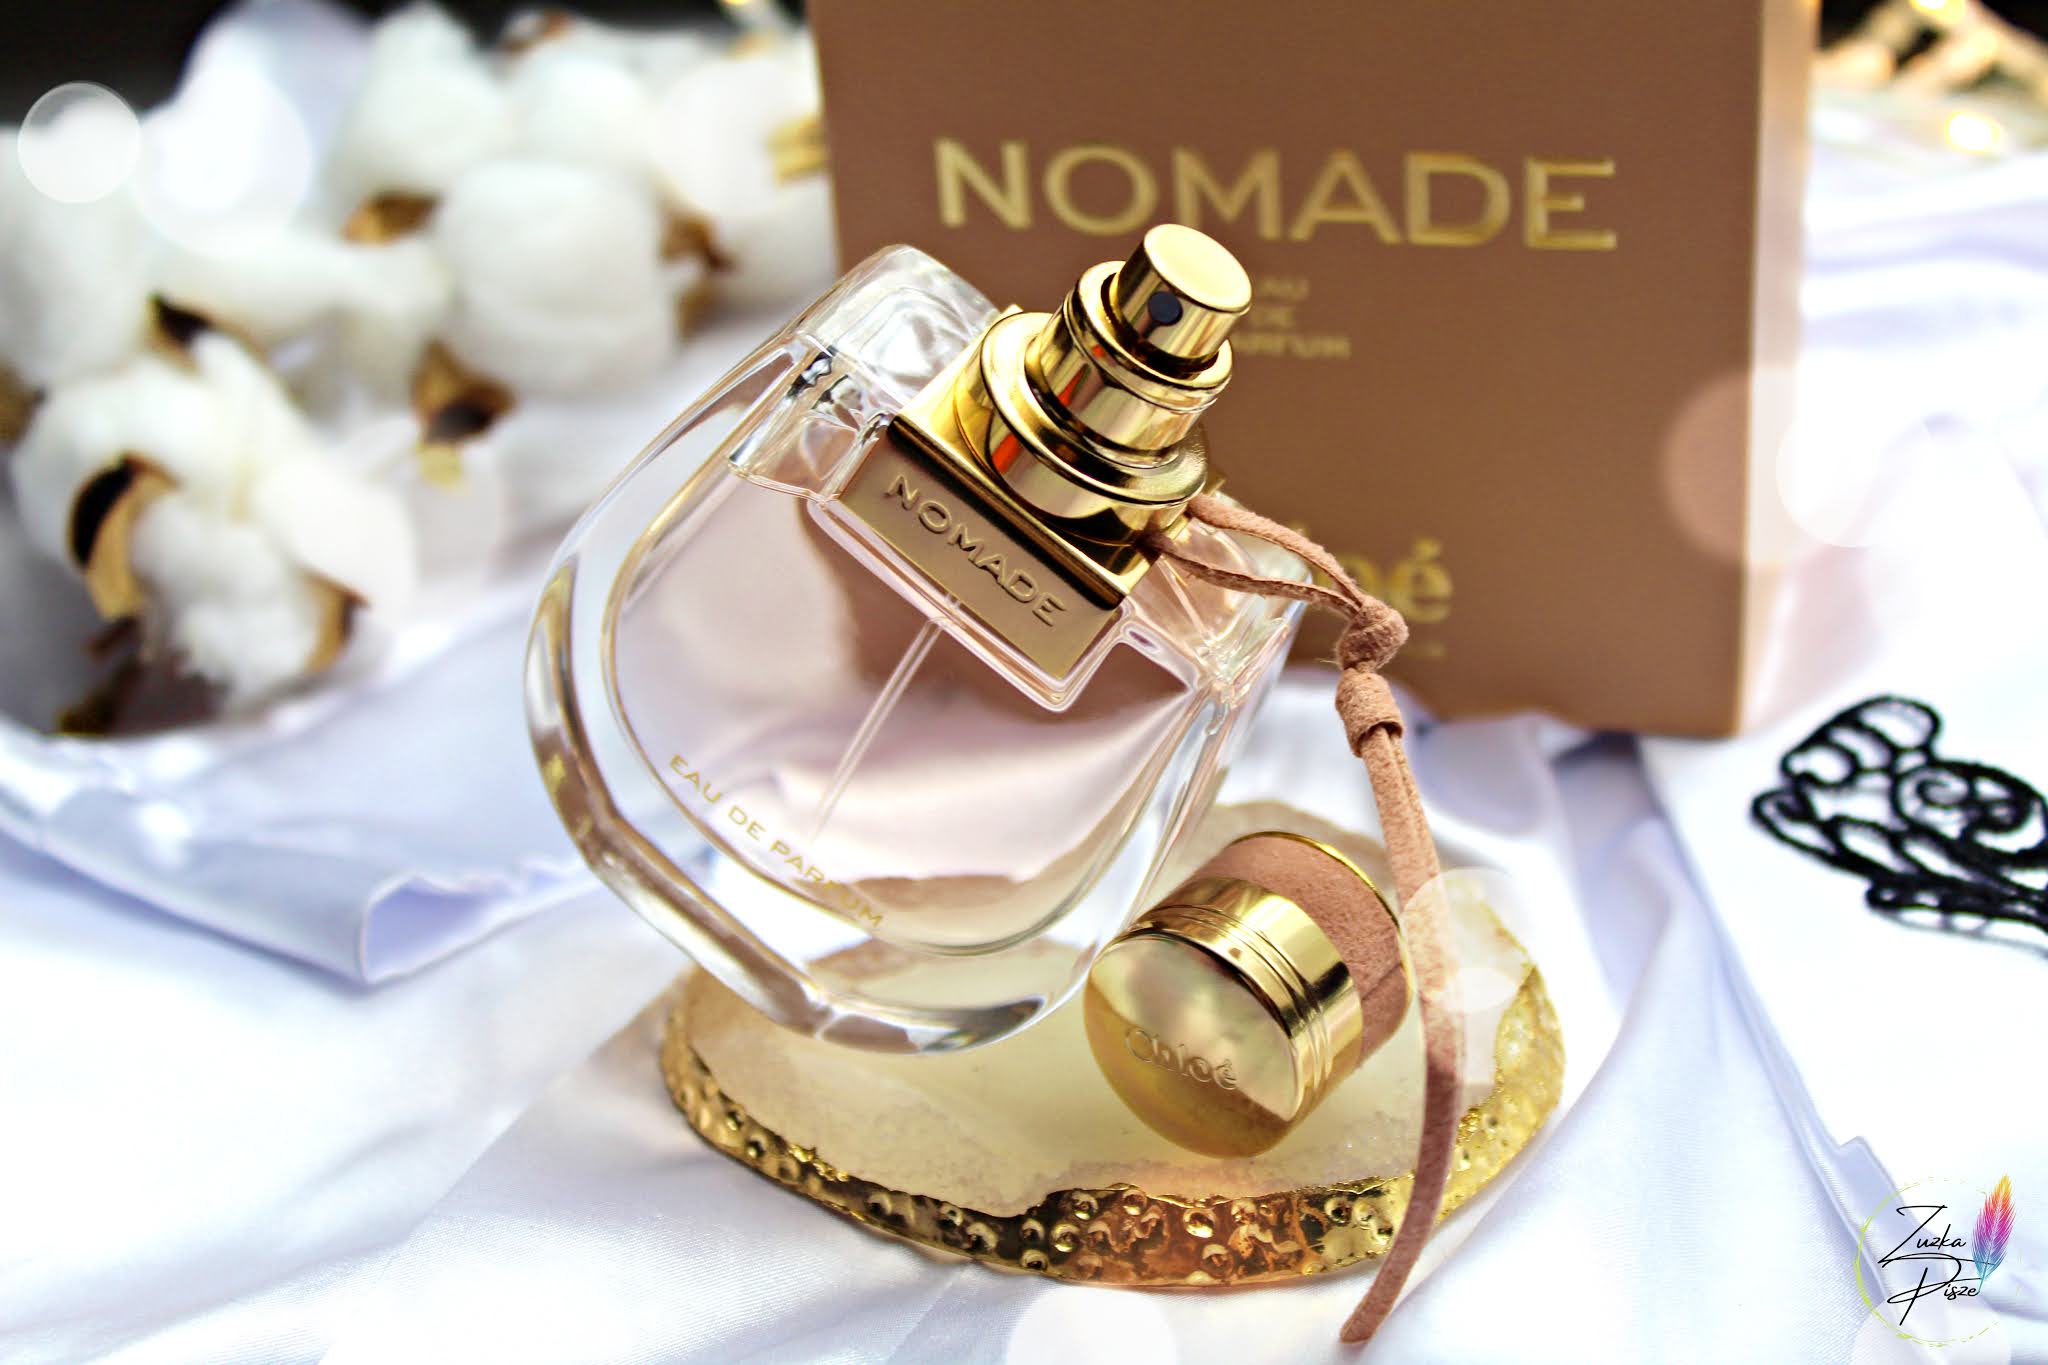 Chloé Nomade Woda perfumowana dla kobiet